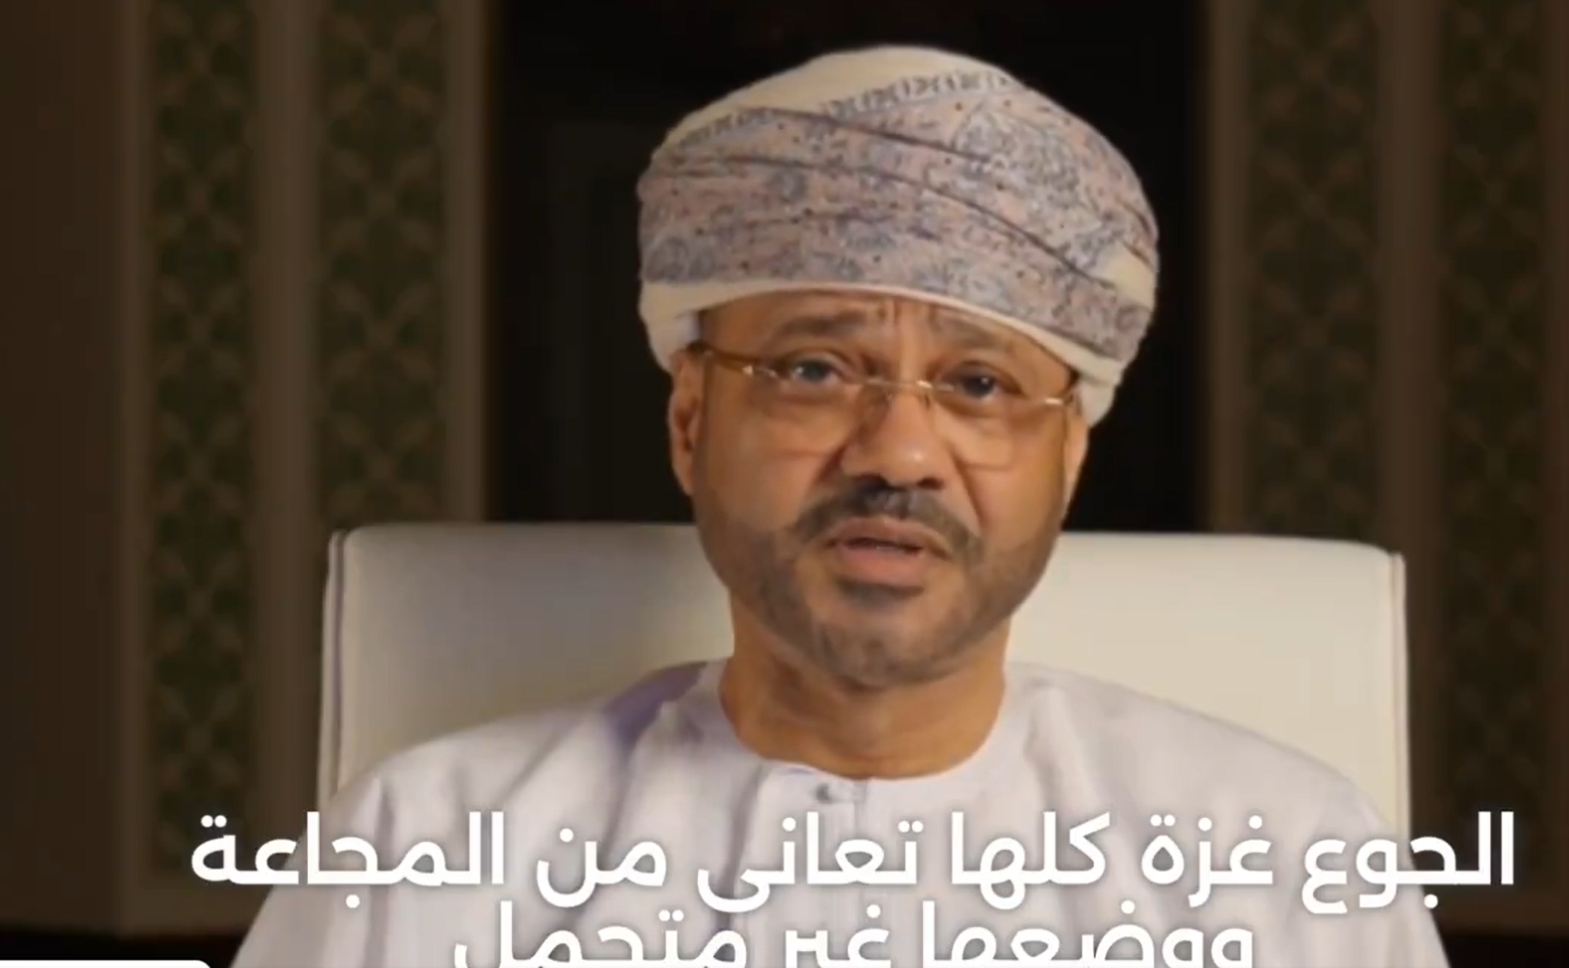 فيديو مُفبرك لوزير خارجية سلطنة عمان بدر البوسعيدي بشأن غزة وحماس يثير جدلا